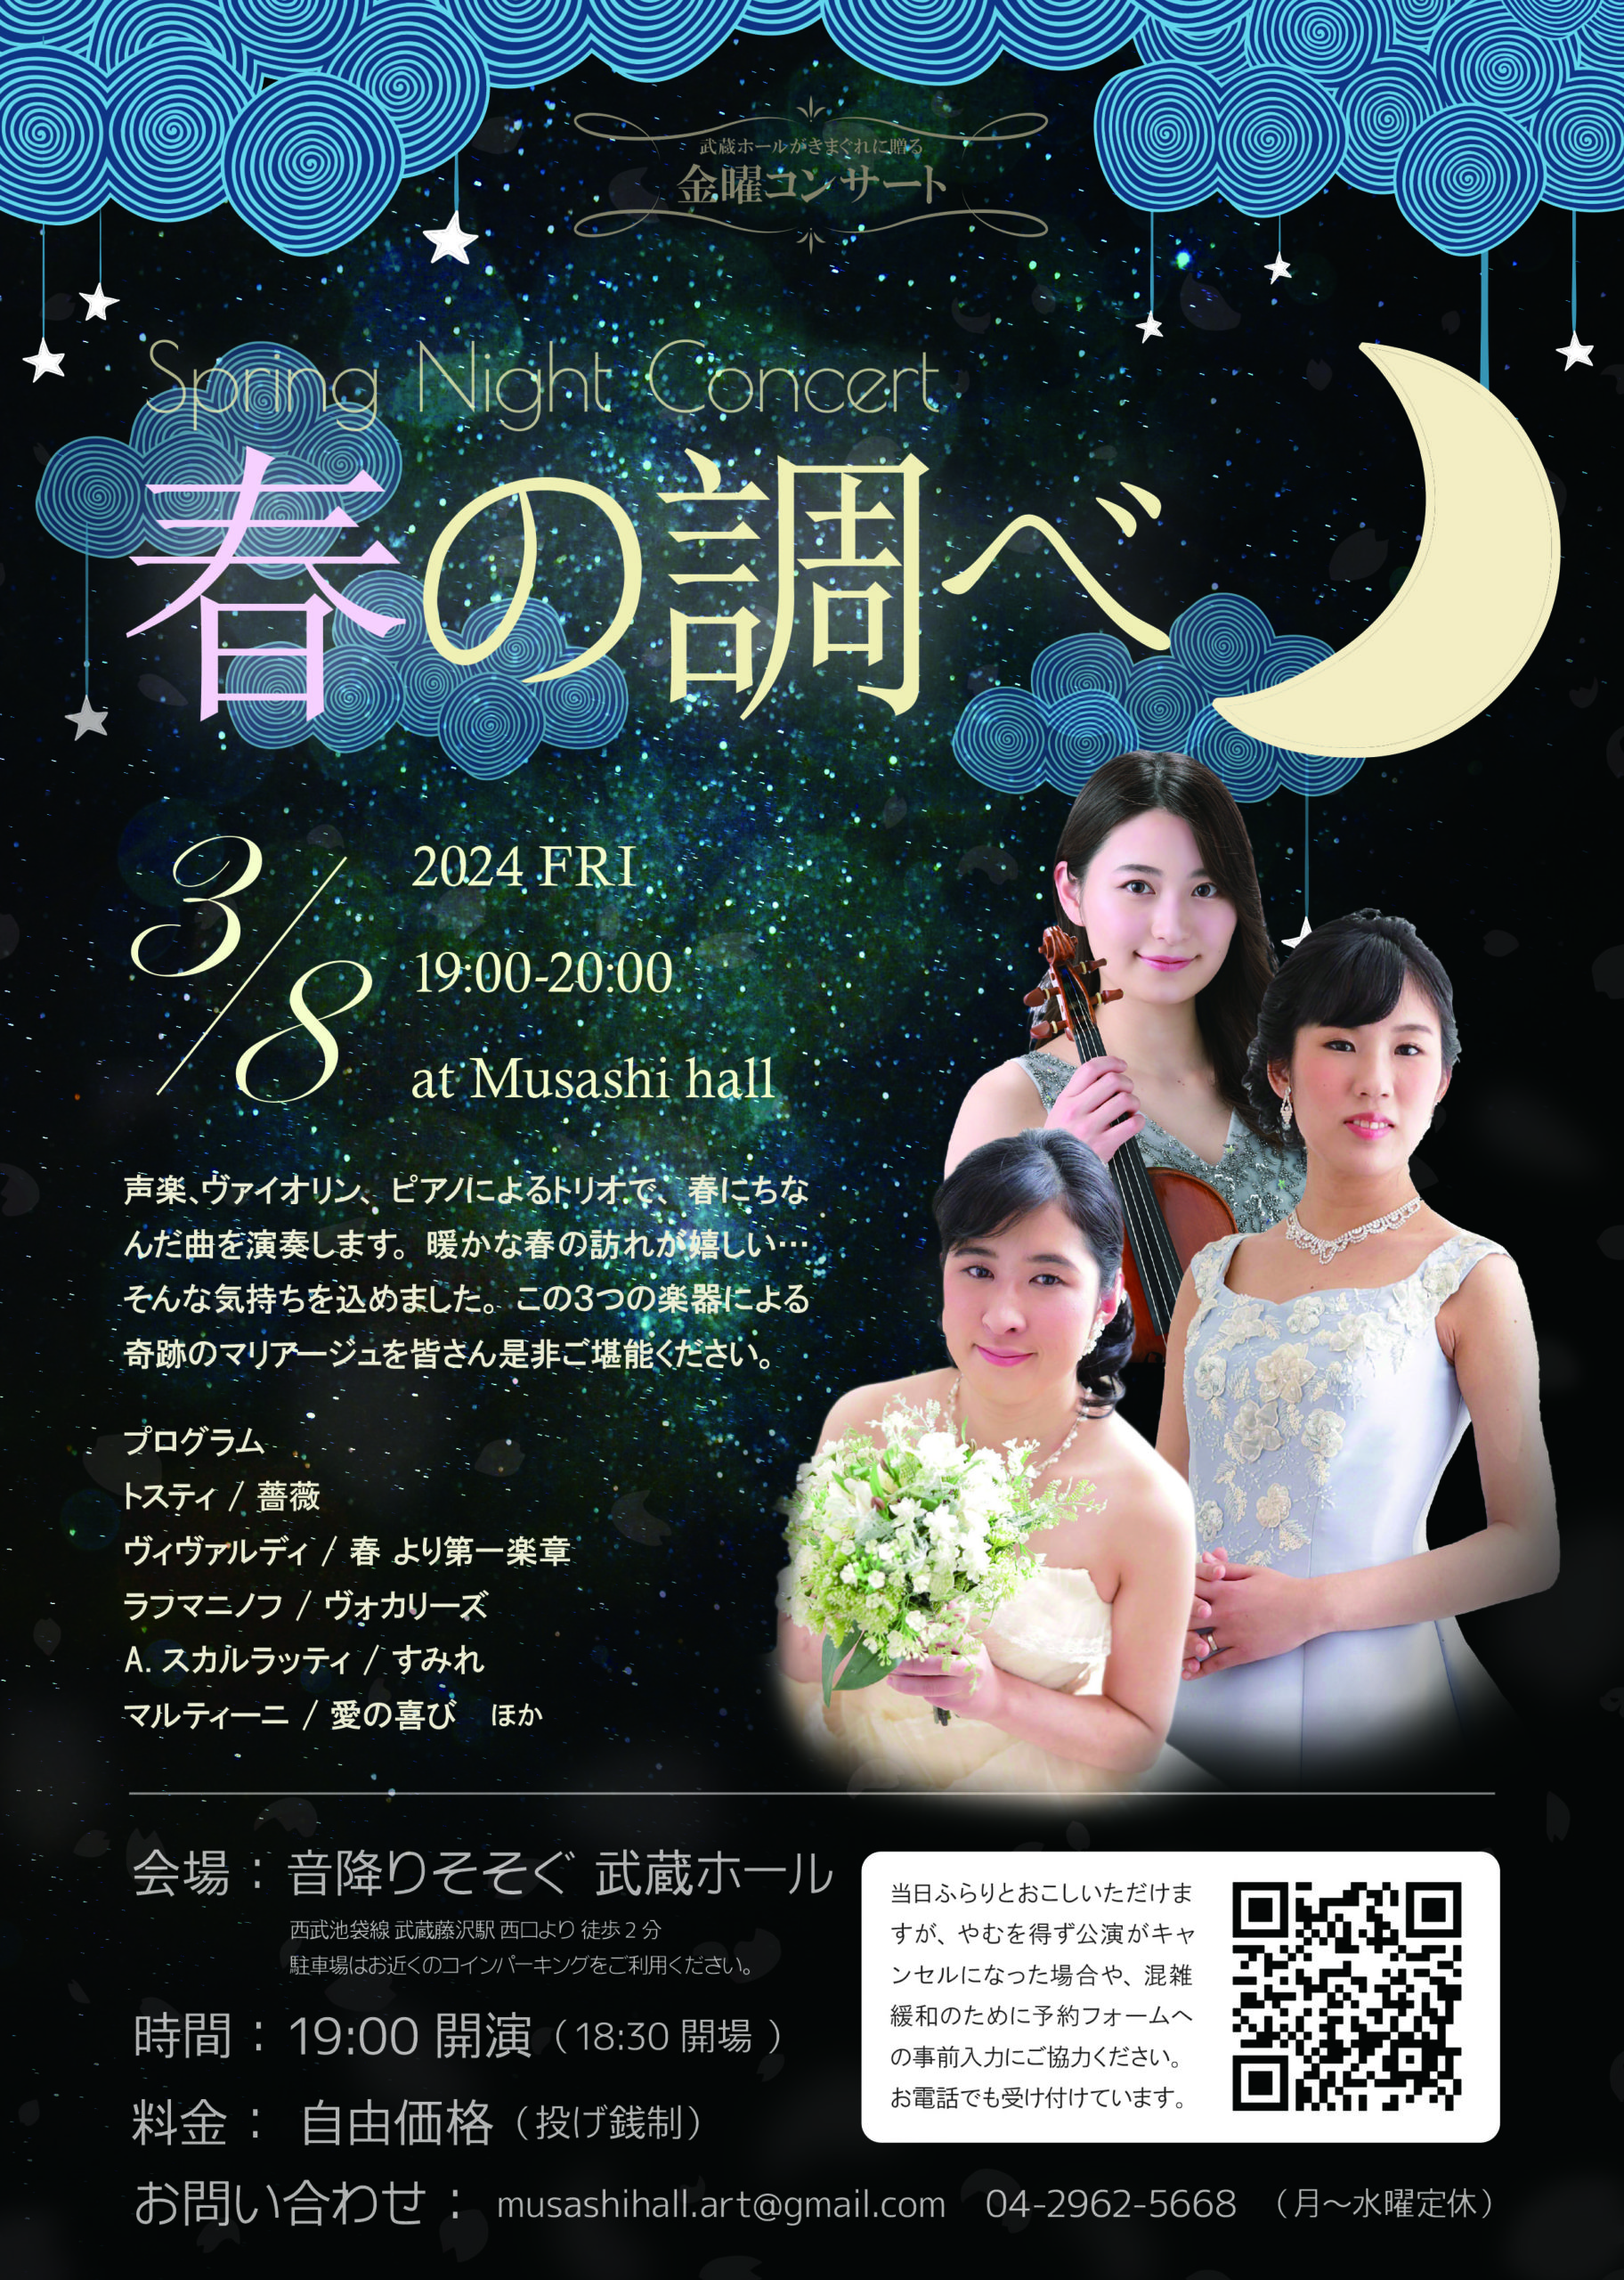 金曜コンサート 「春の調べ  -Spring Night Concert-」